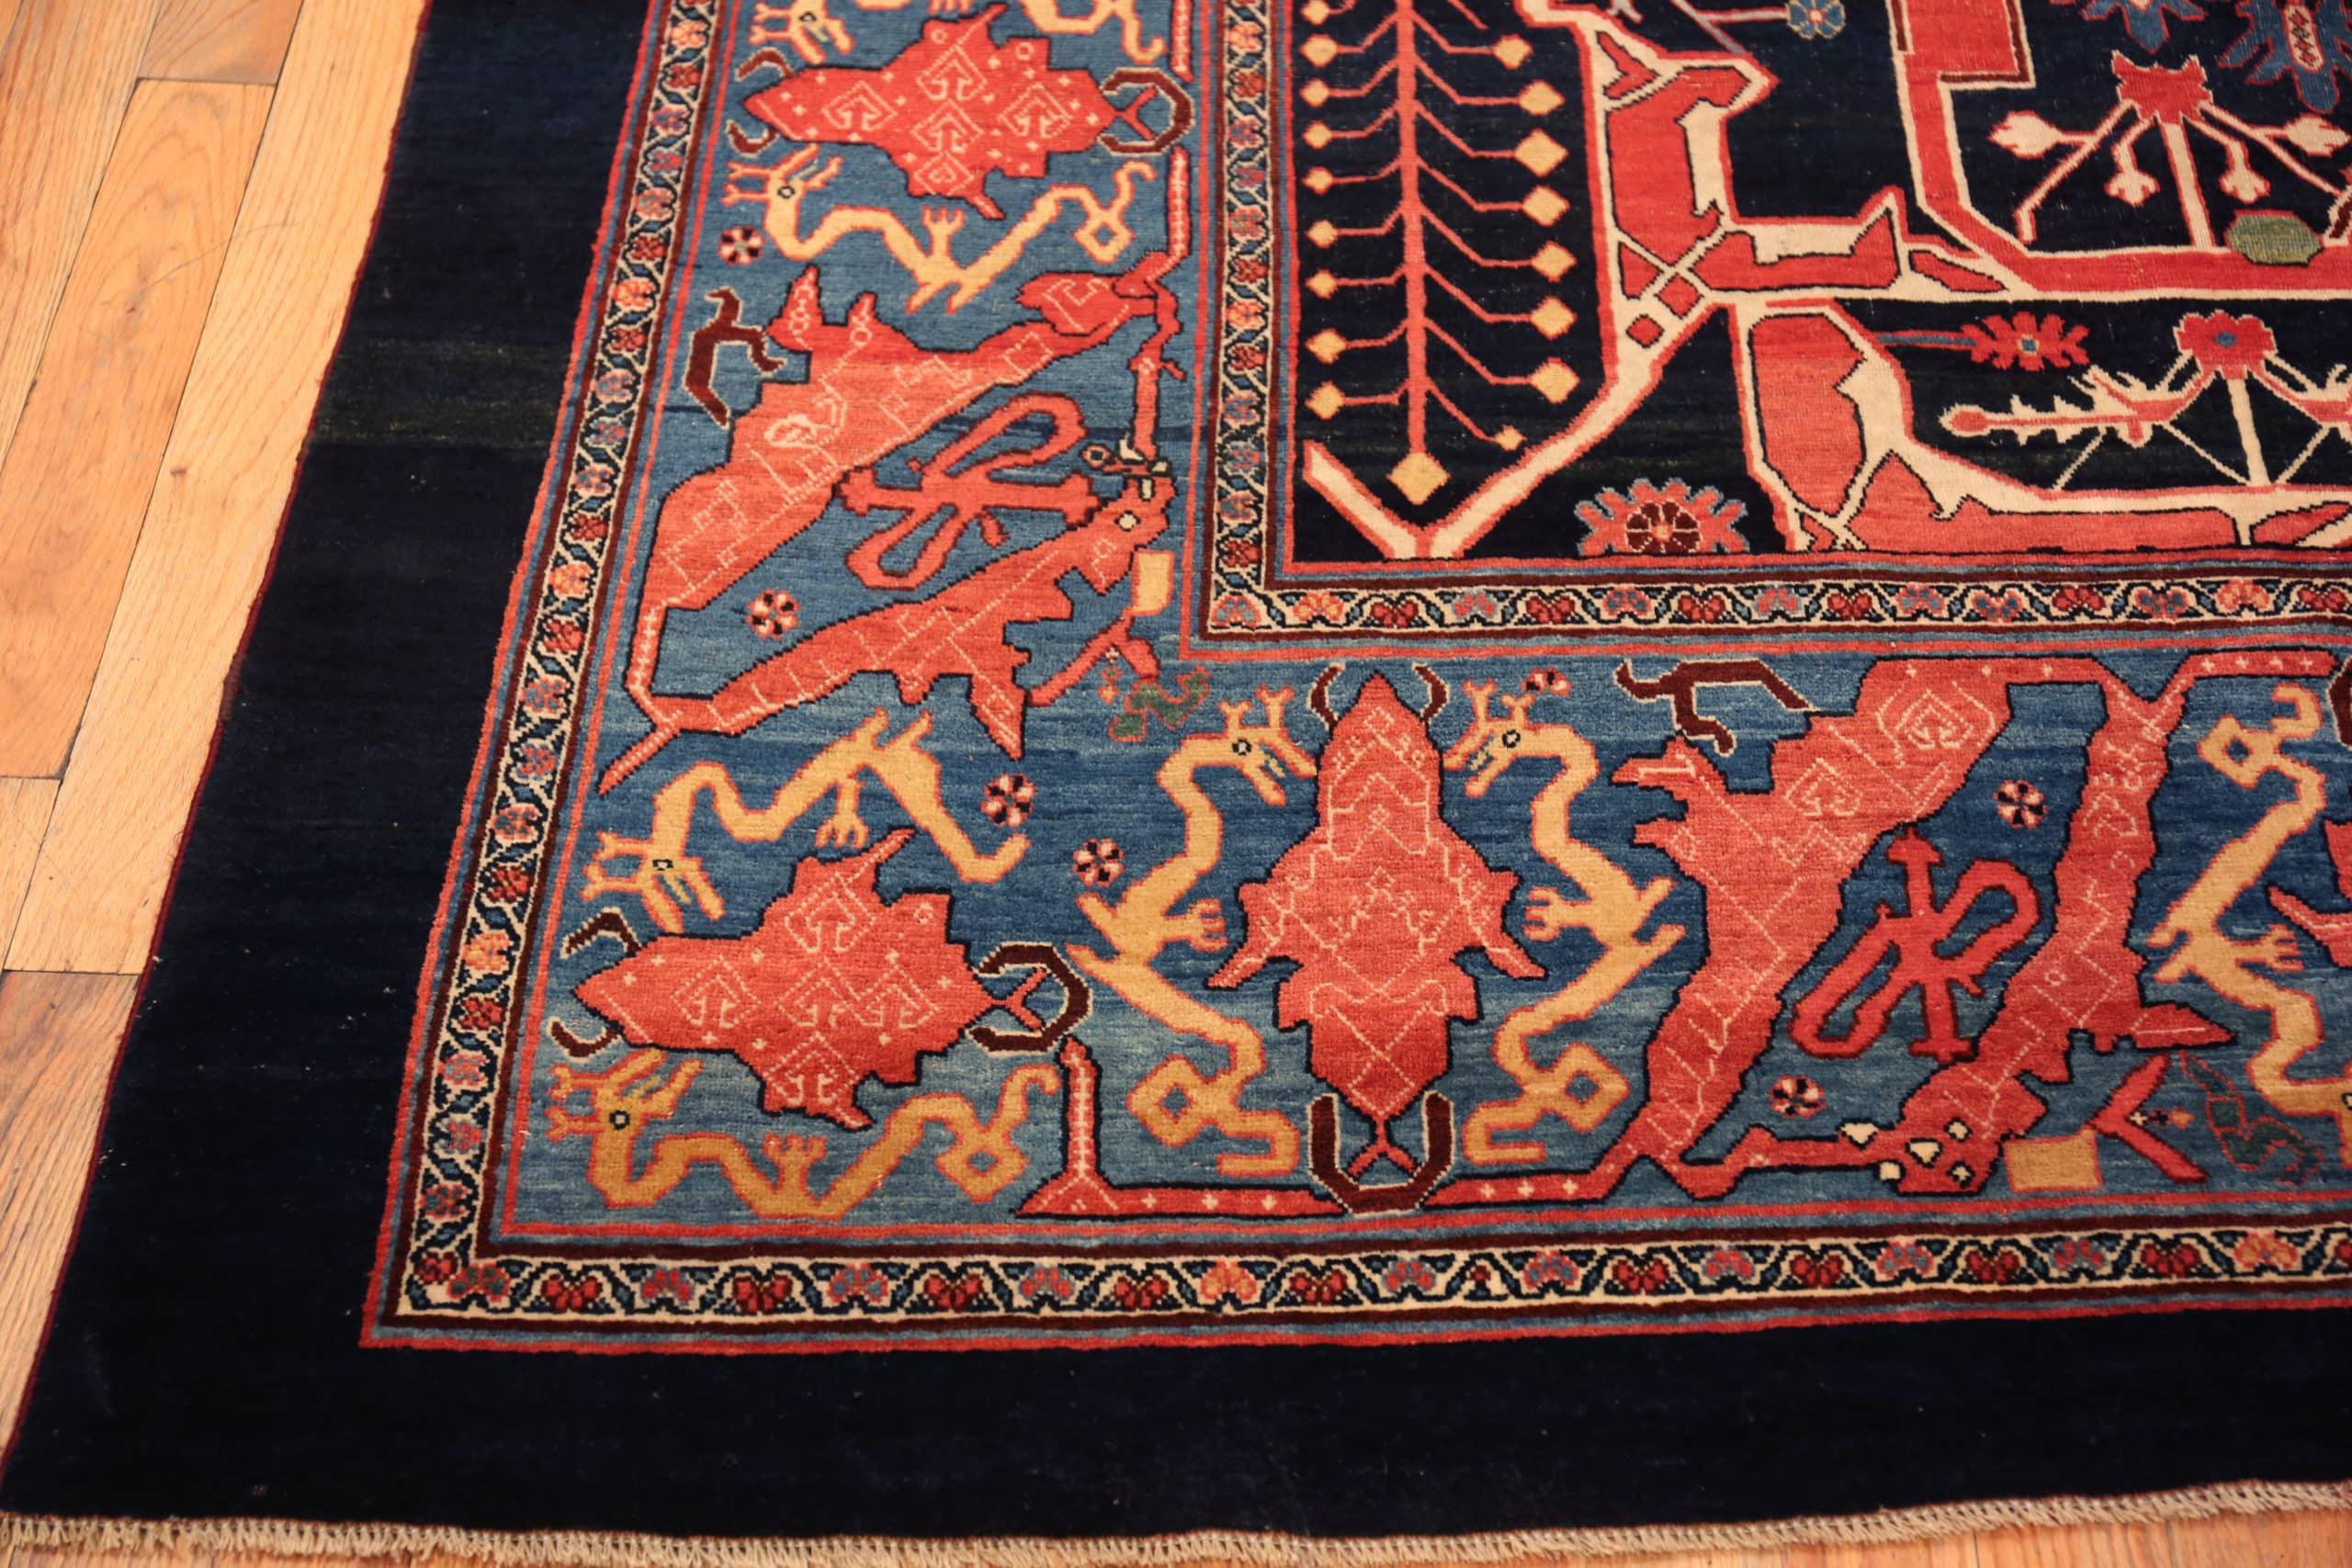 Wool Large Navy Blue Background Antique Persian Garous Design Bidjar Rug 11' x 17'8